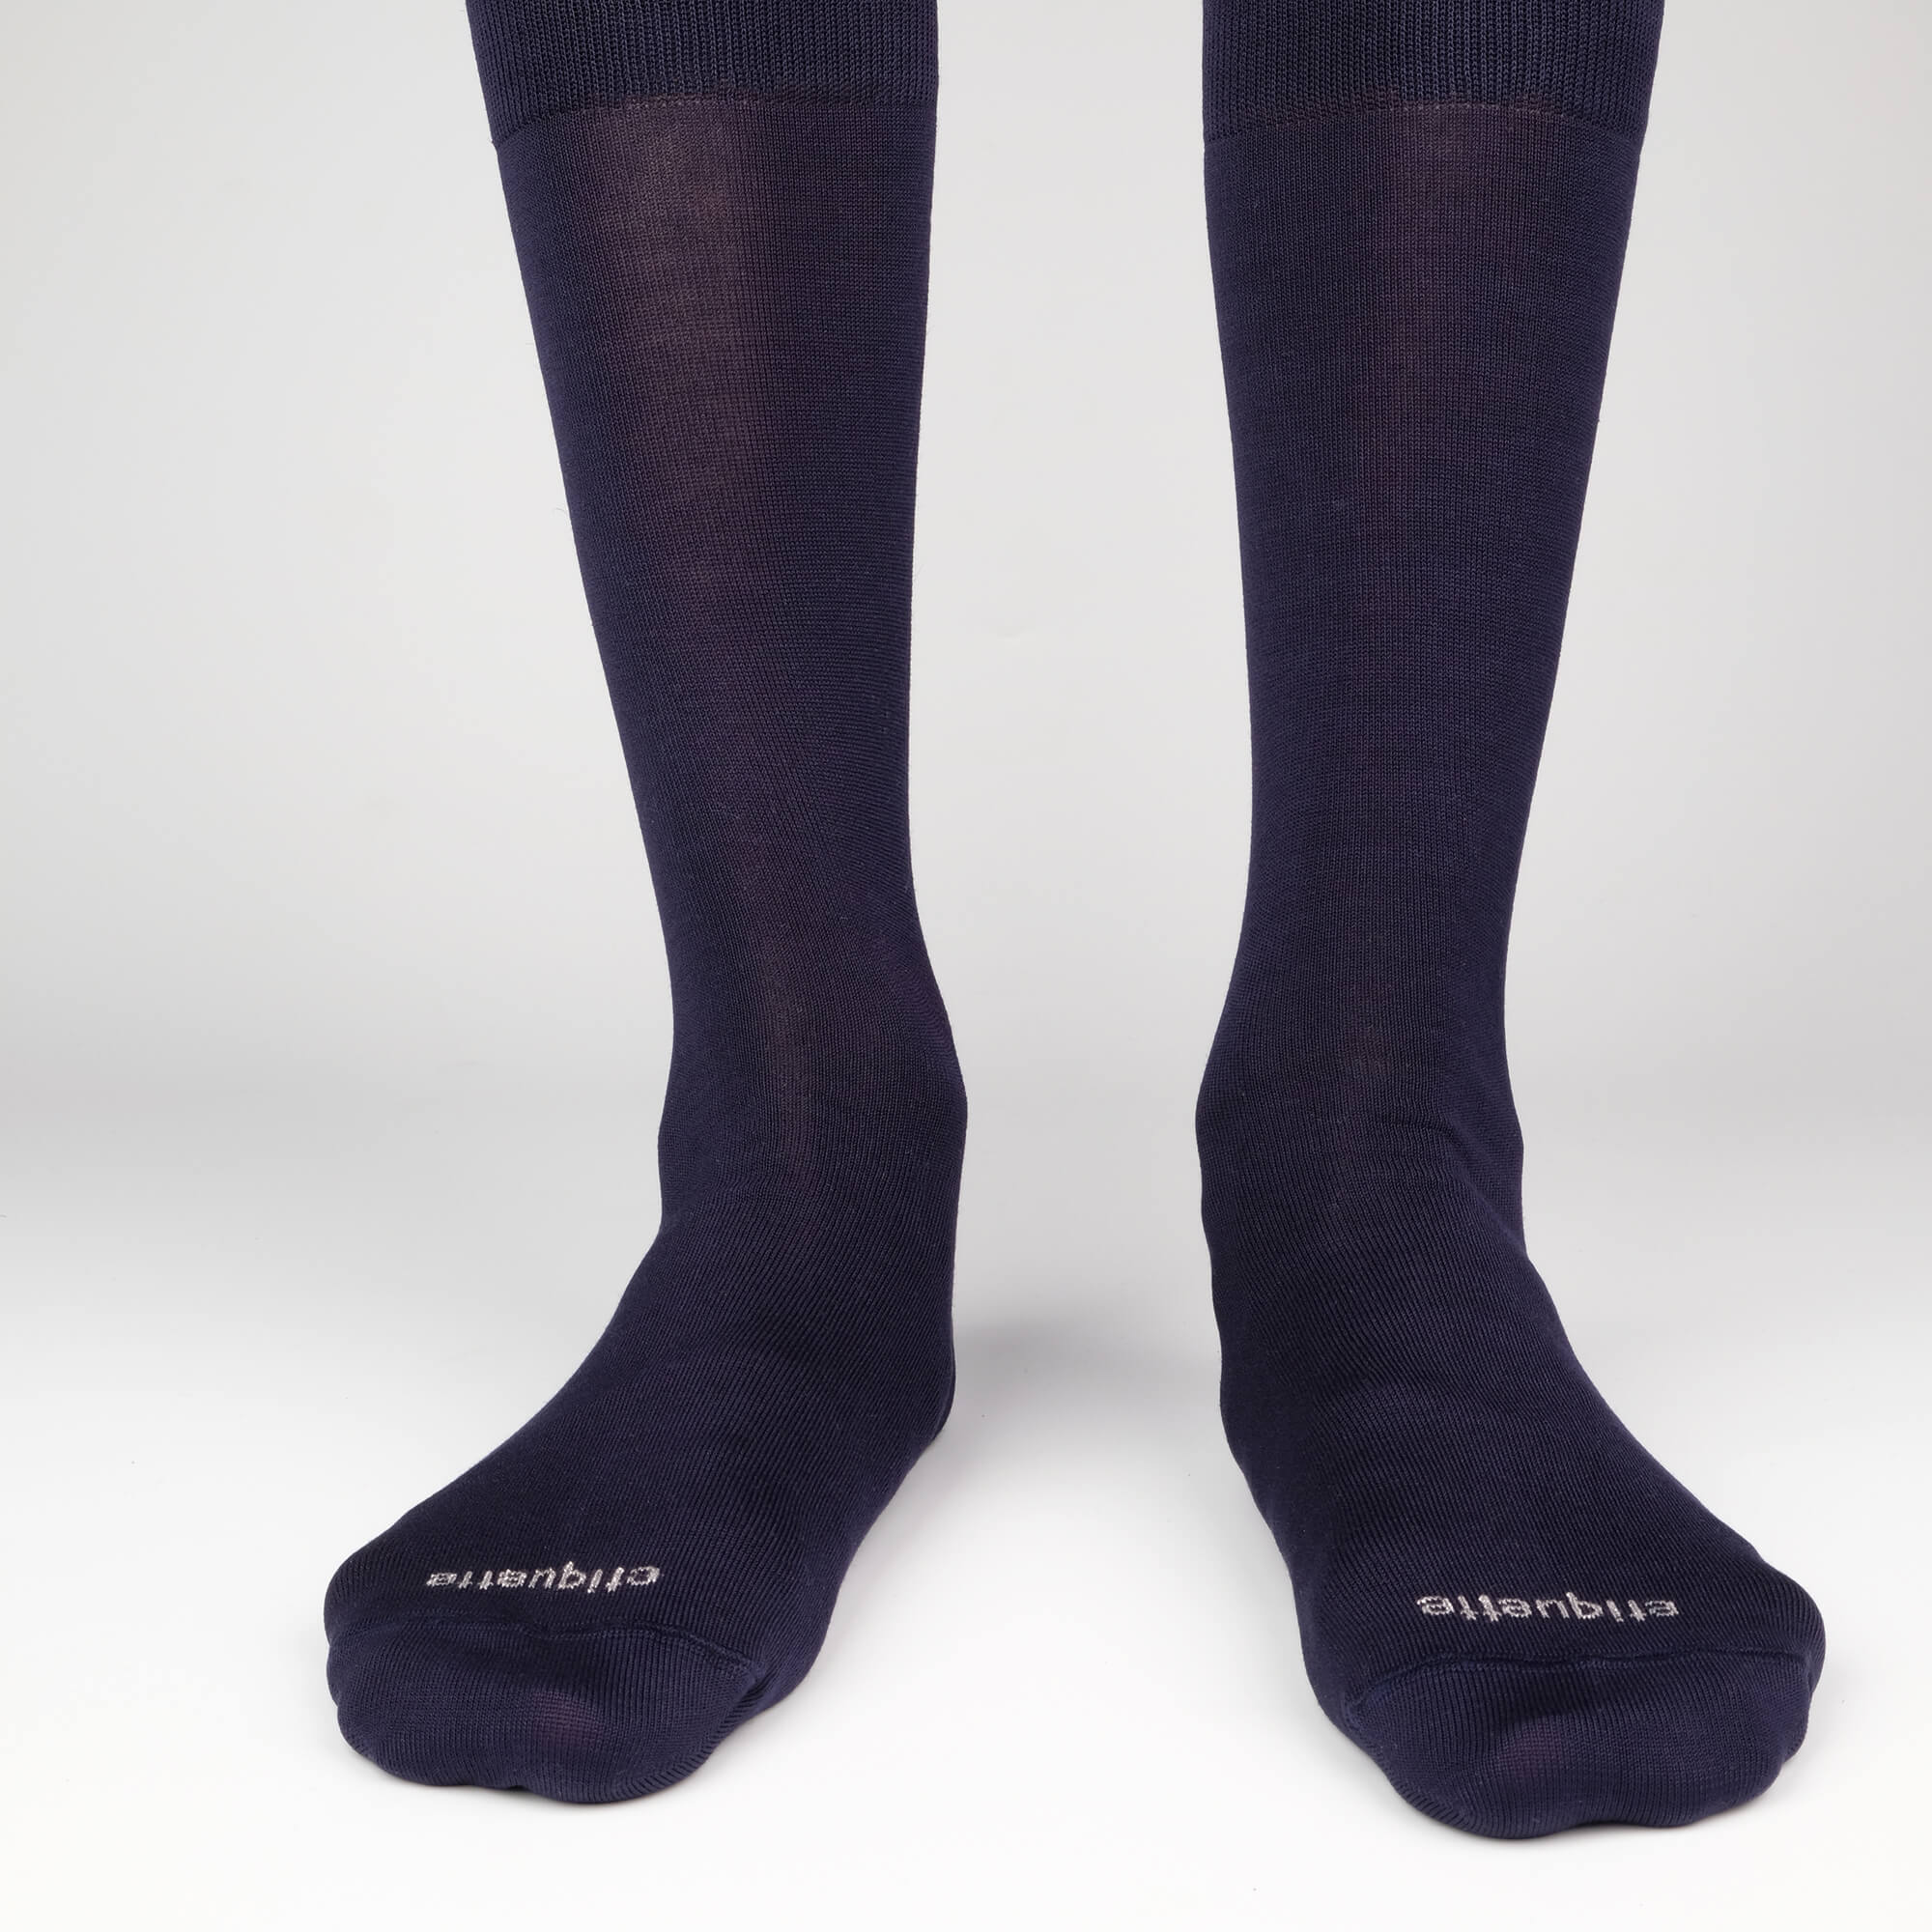 Mens Socks - Men's Crew Dress Socks 3 Pack - Navy⎪Etiquette Clothiers